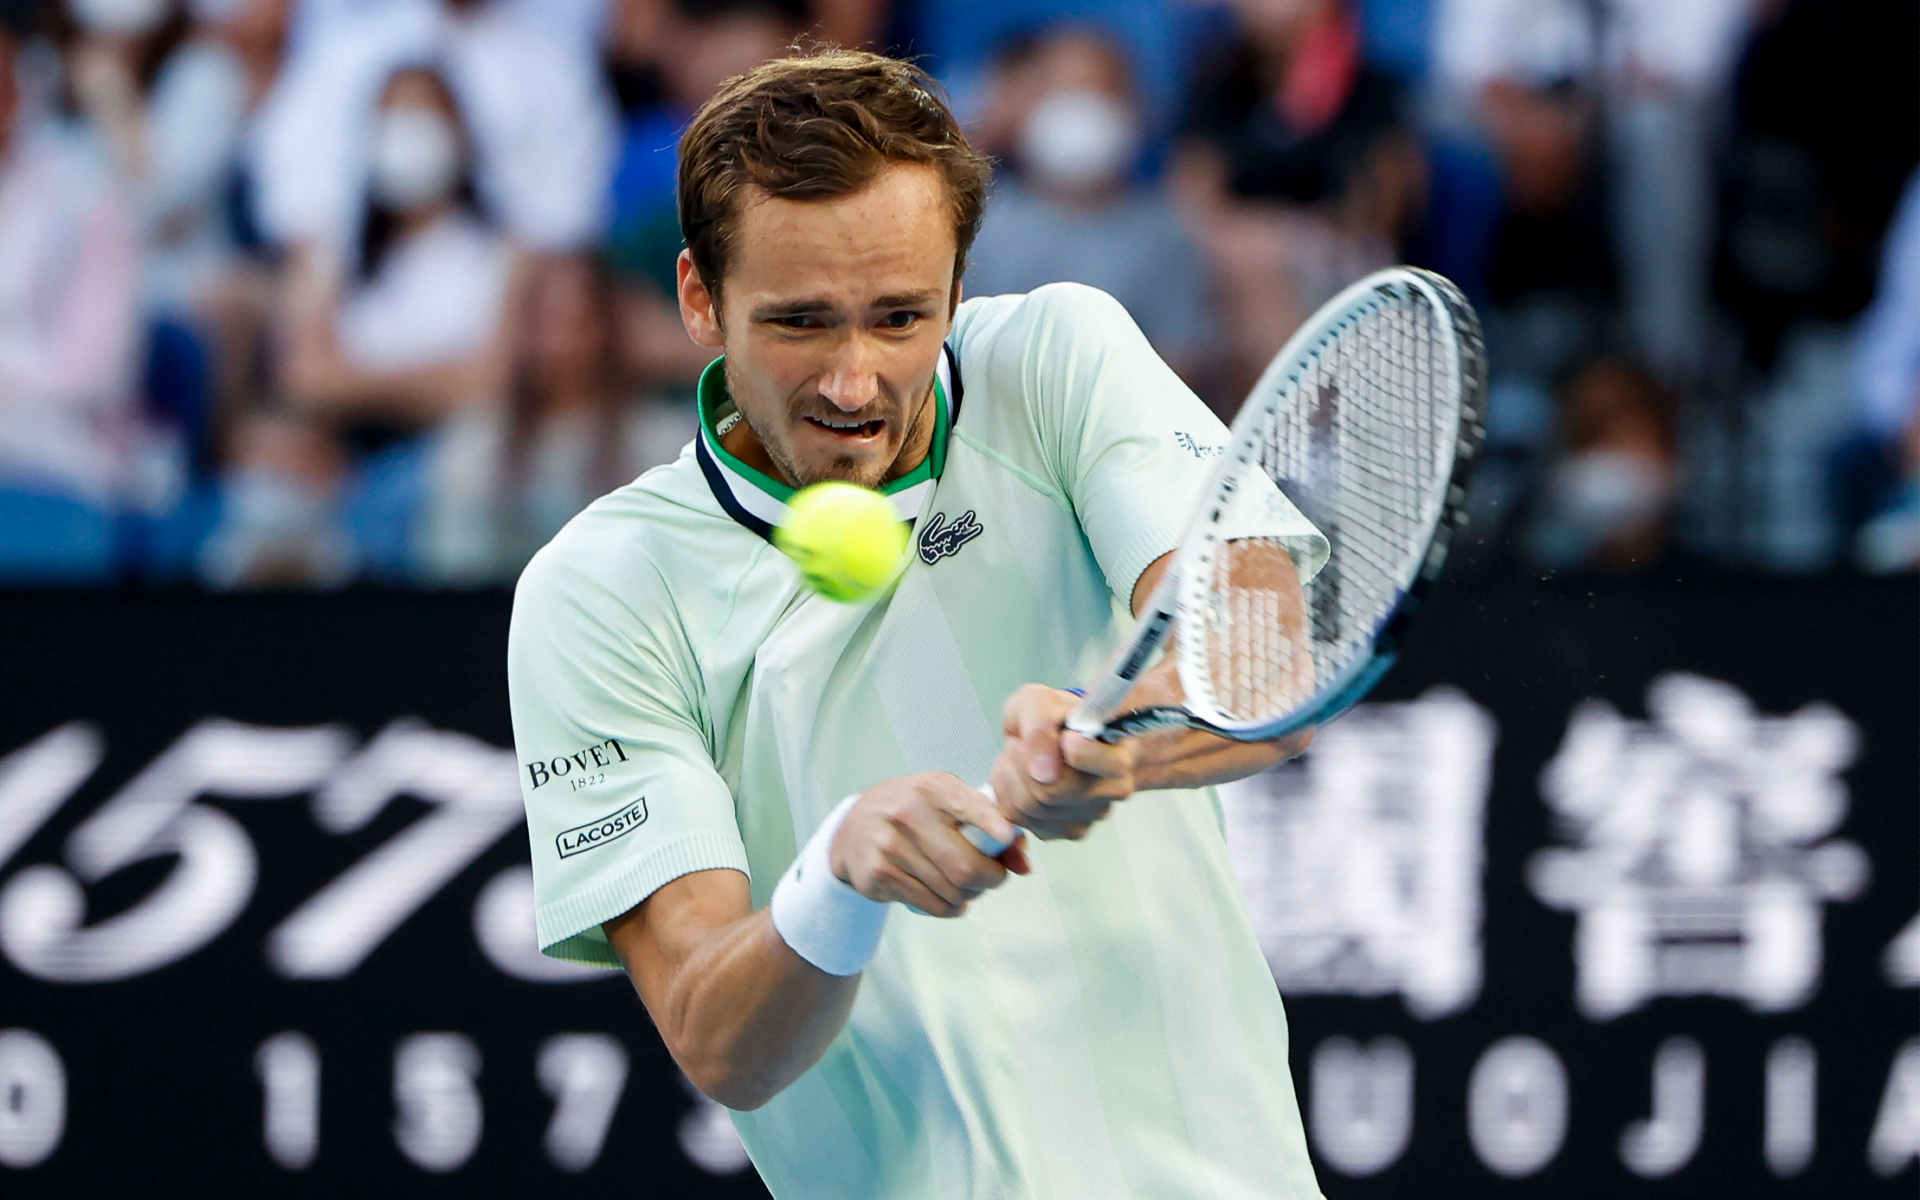 Медведев оказался в одном сете от победы в финале Australian Open